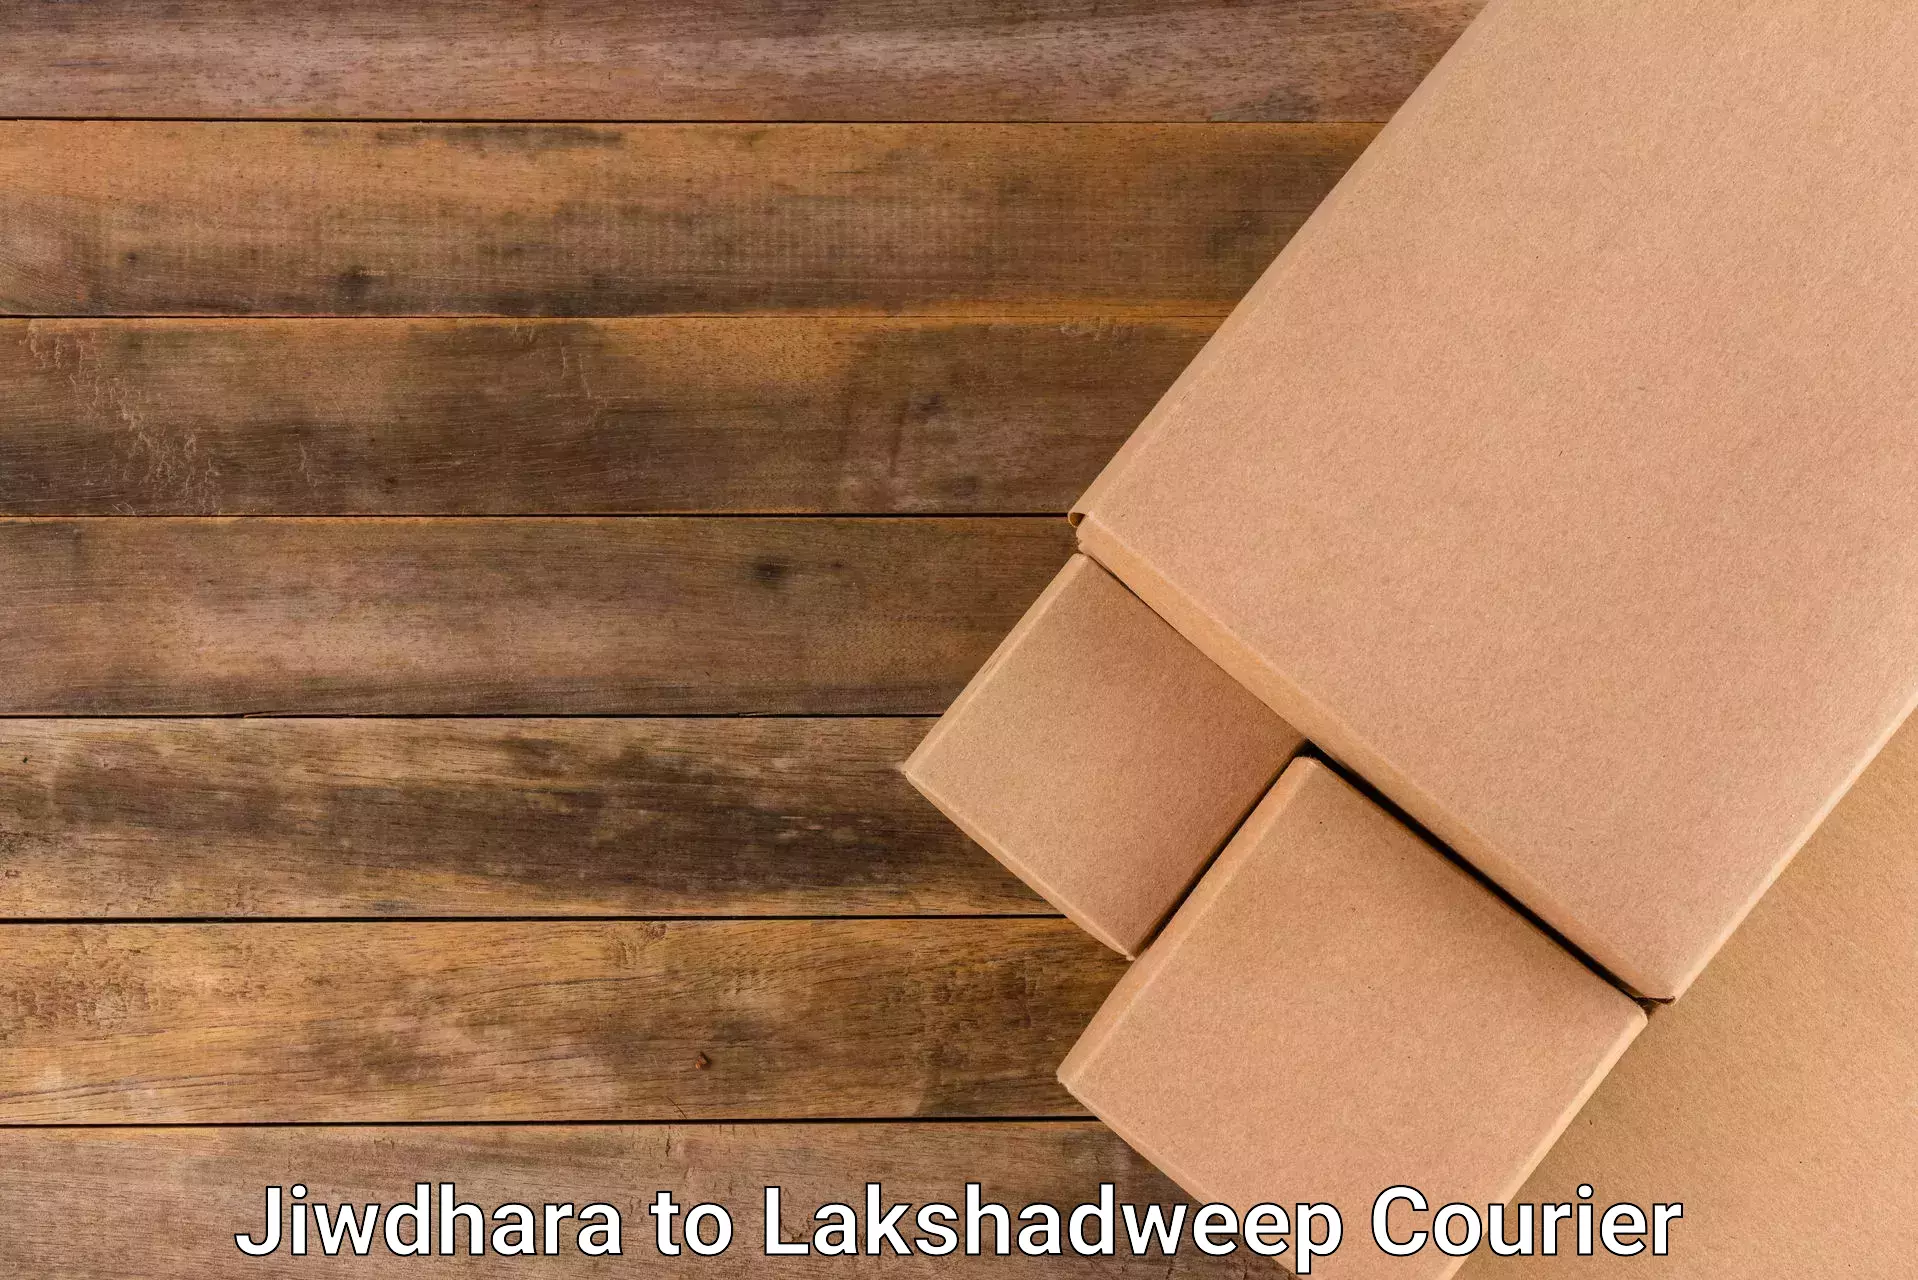 Efficient parcel delivery Jiwdhara to Lakshadweep